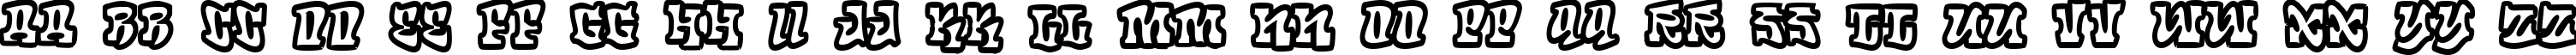 Пример написания английского алфавита шрифтом RoteFlora